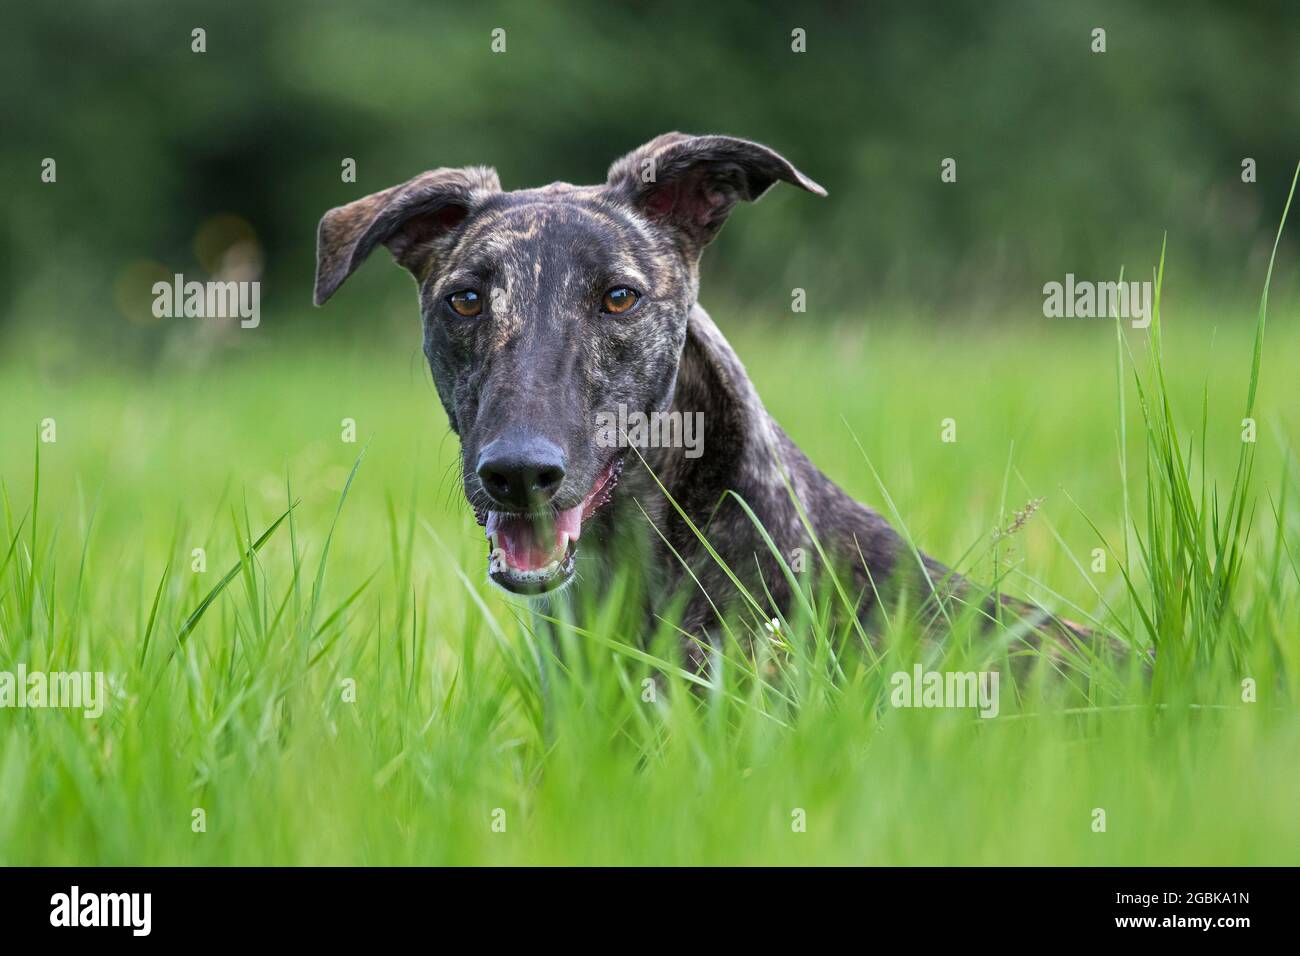 Brindled rough-coated Galgo Español / barcino Spanish galgo / atigrado Spanish sighthound, dog breed of the sighthounds, close-up portrait Stock Photo